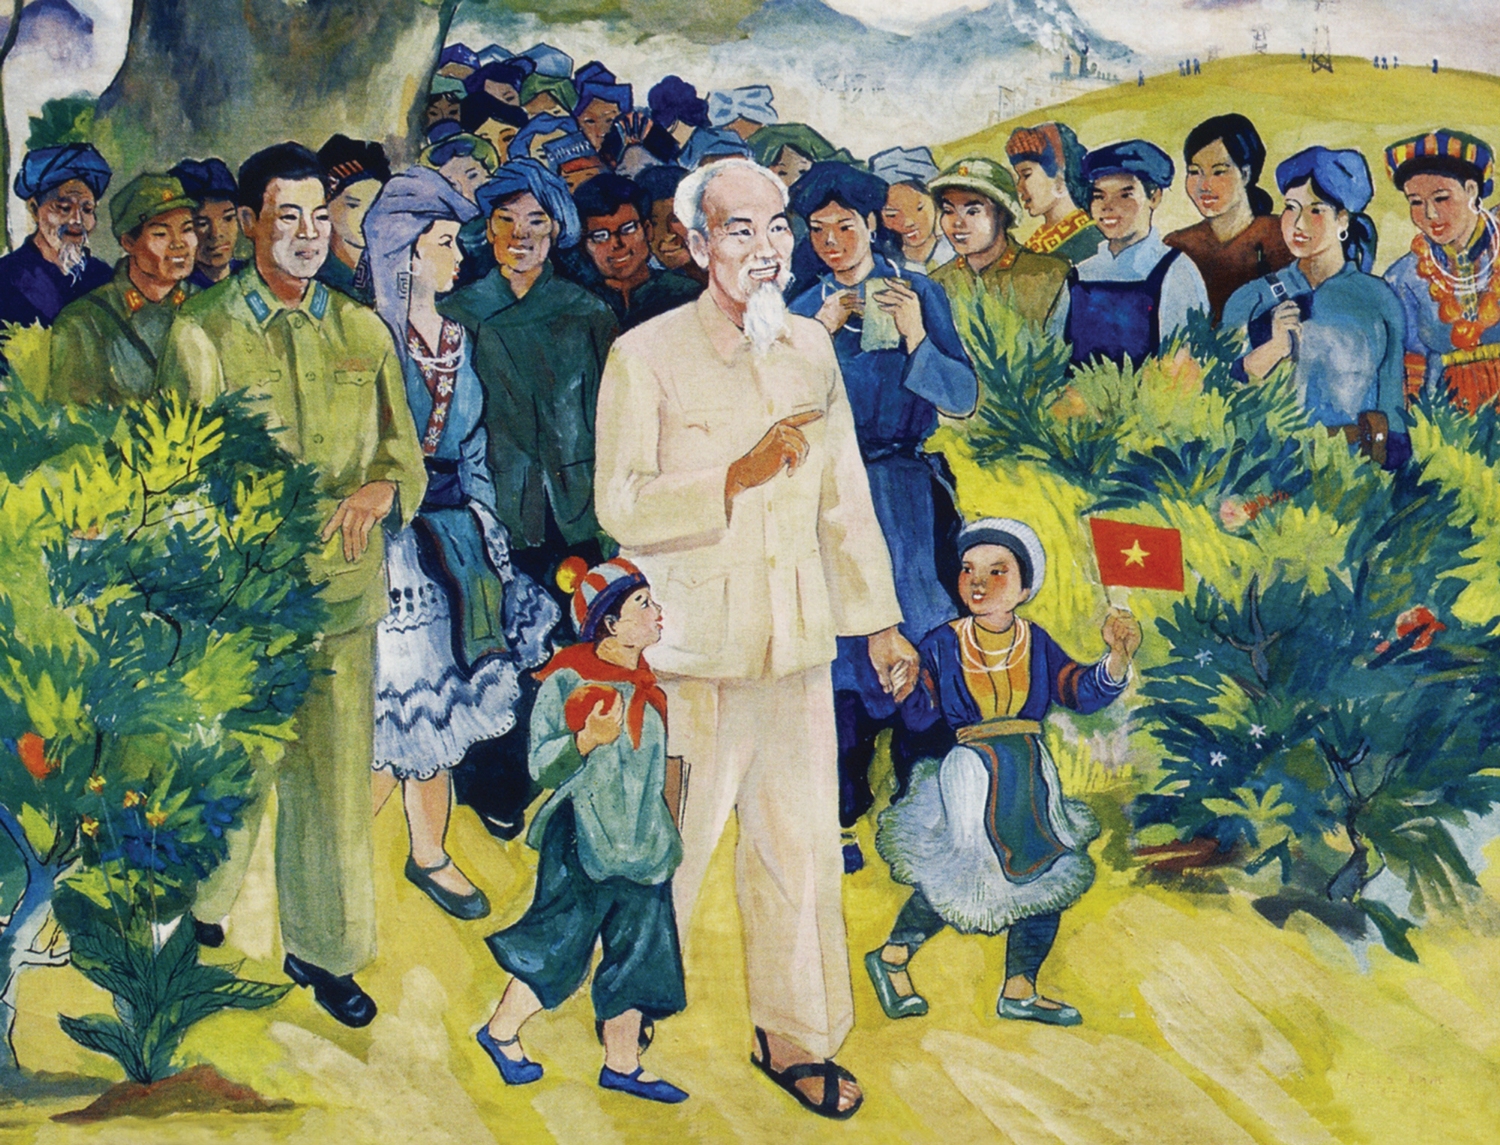 Tiếp tục đẩy mạnh việc học tập và làm theo tư tưởng, đạo đức, phong cách Hồ Chí Minh, đáp ứng yêu cầu nhiệm vụ cách mạng trong giai đoạn mới